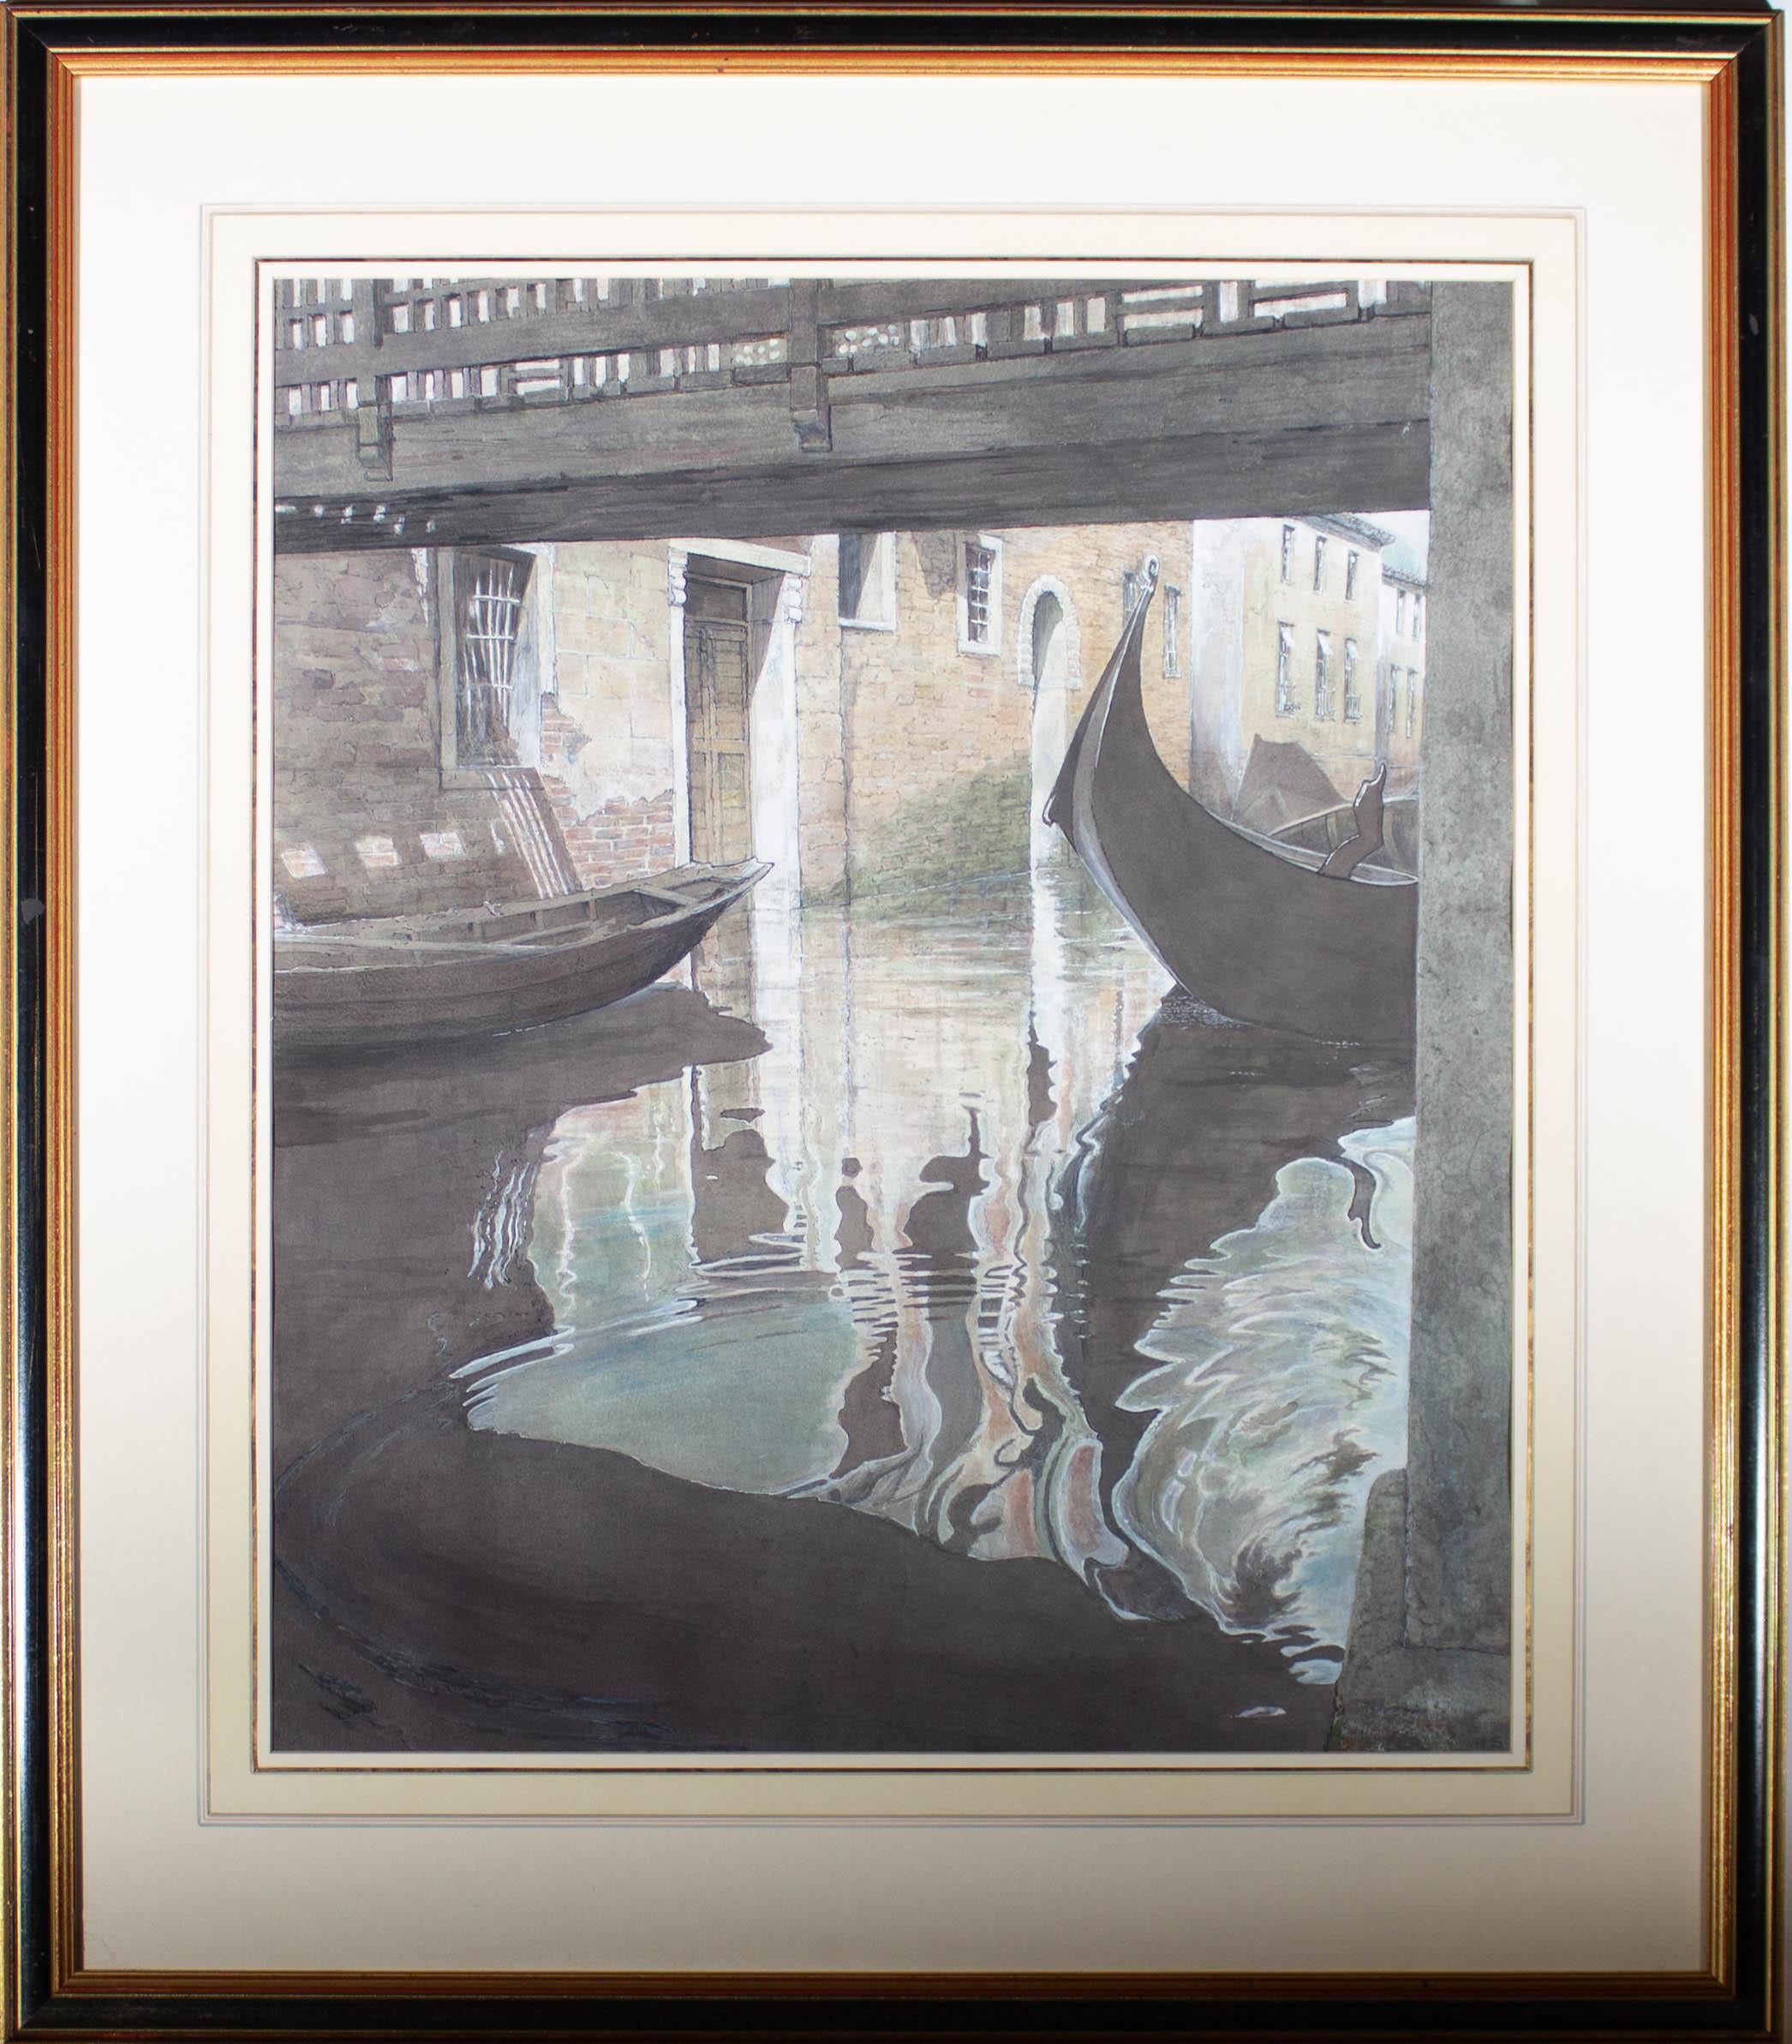 Ein stimmungsvolles und atmosphärisches Aquarell des 20. Jahrhunderts von guter Größe, das eine ungewöhnliche Ansicht des Hinterwasserkanals von Venedig zeigt. Der Künstler konzentriert sich auf das wirbelnde Wasser des Kanals und nicht auf die